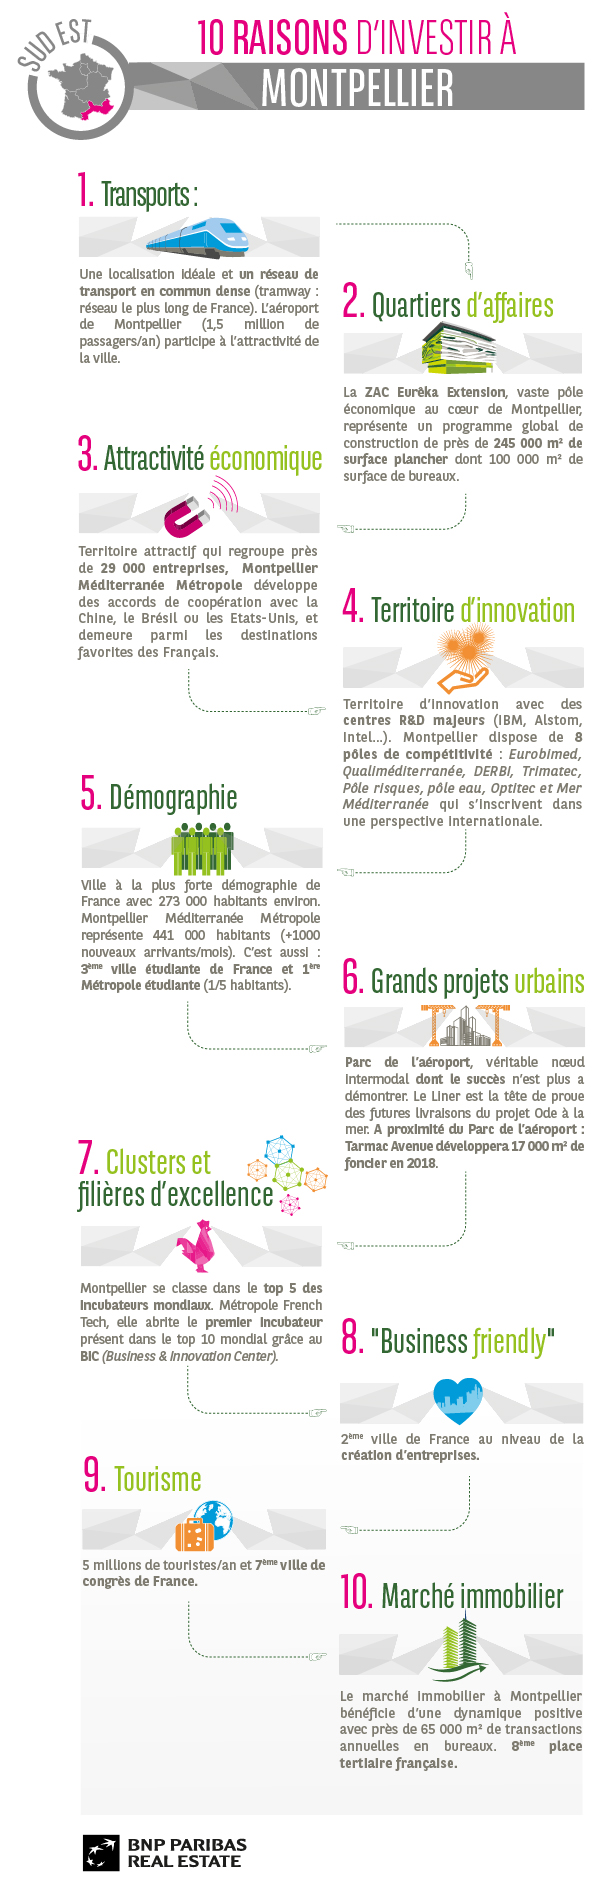 10 raisons d'investir à Montpellier